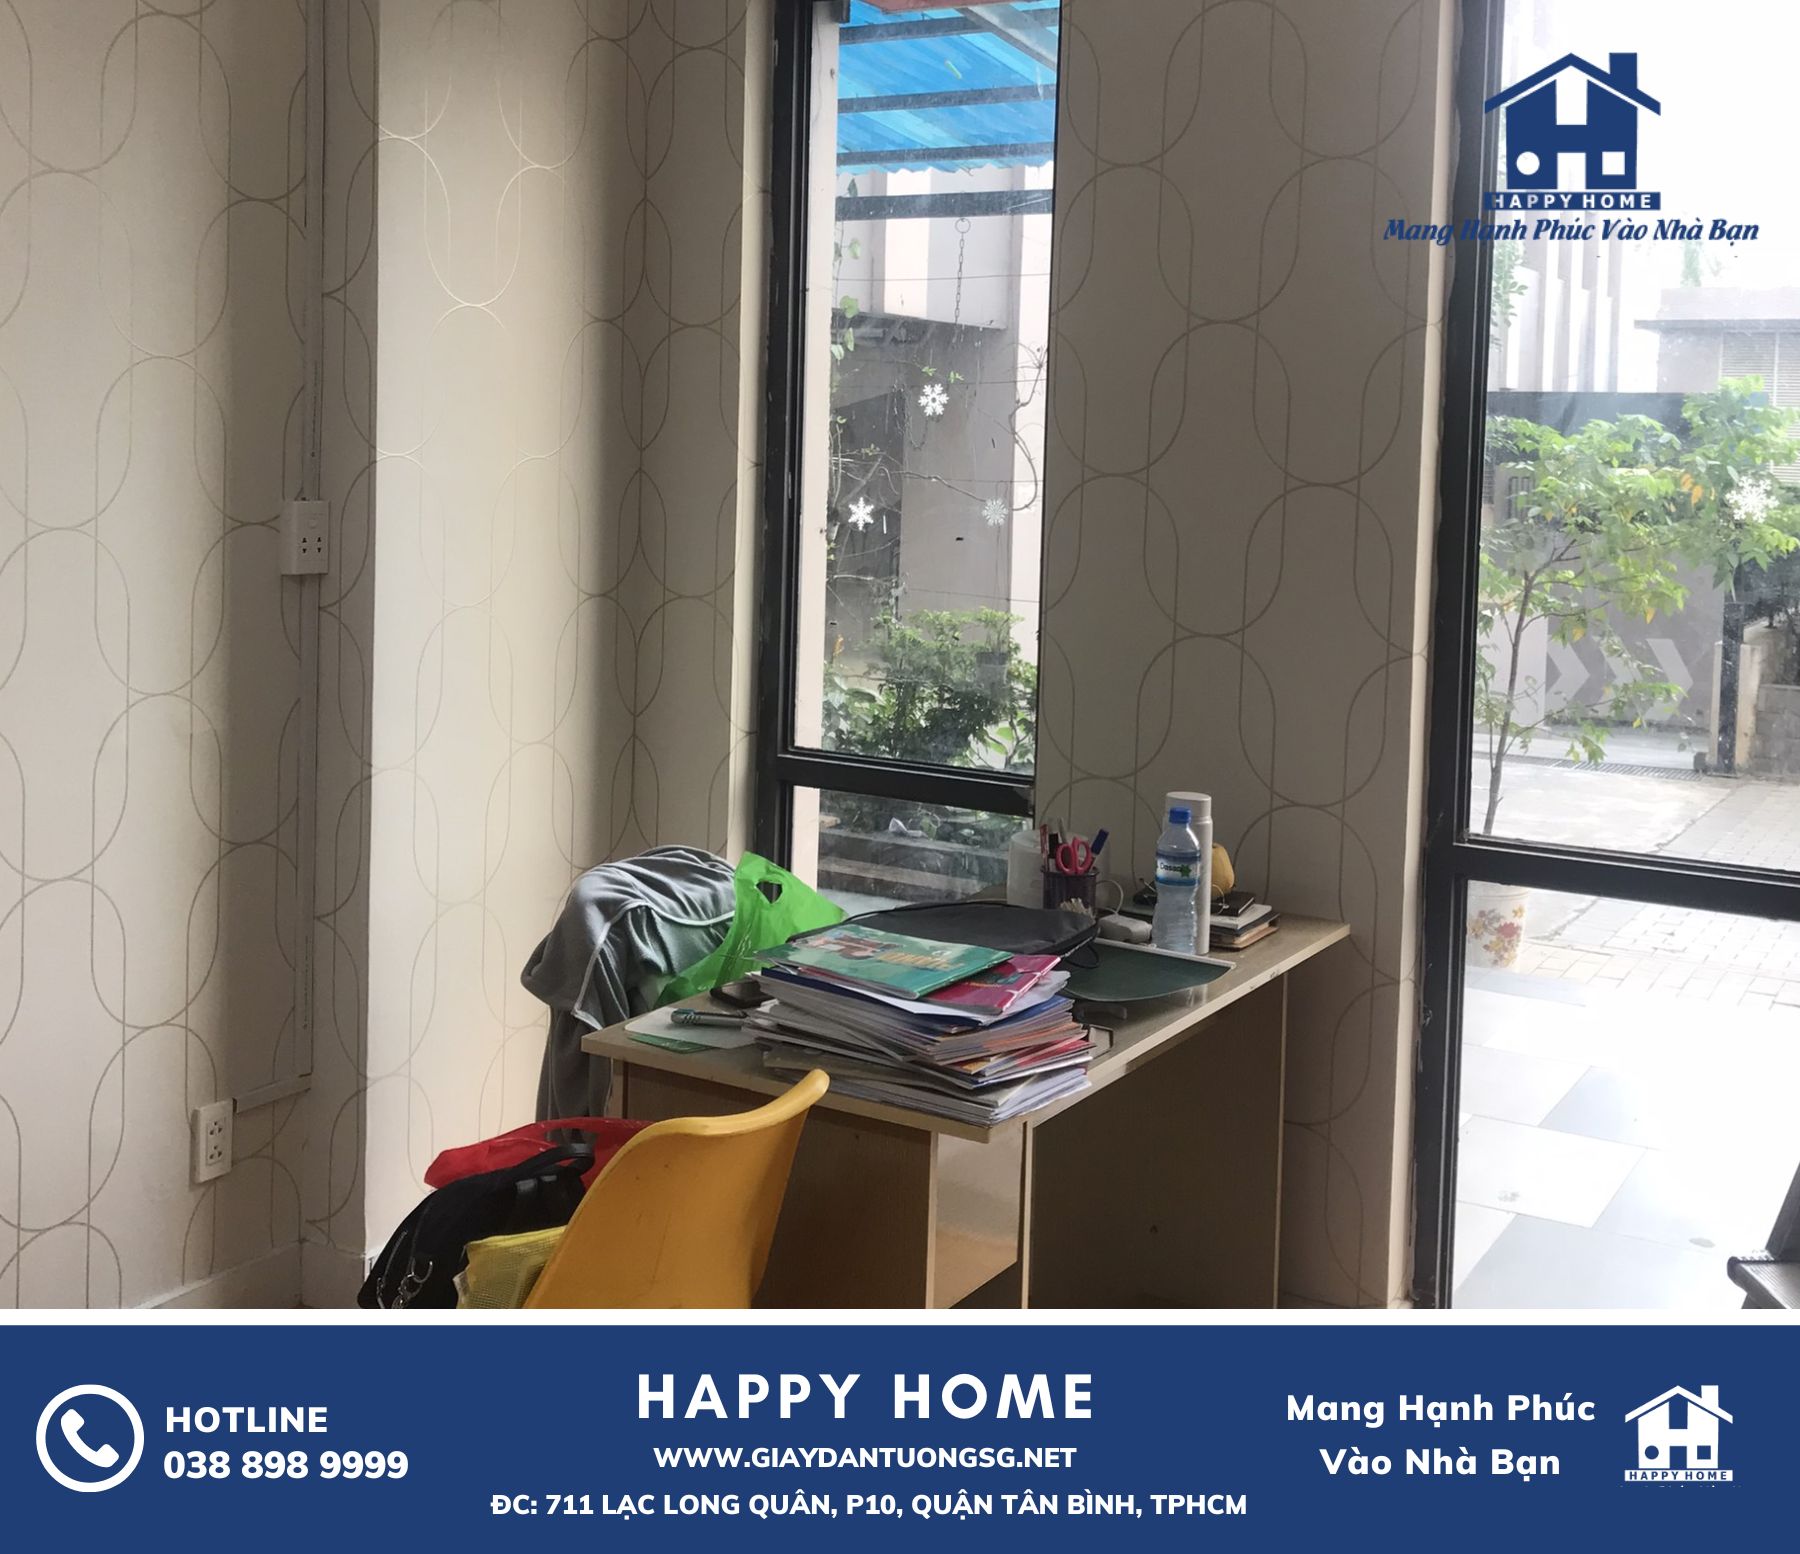 Cùng Happy Home khám phá công trình thi công giấy dán tường Hàn Quốc đẳng cấp